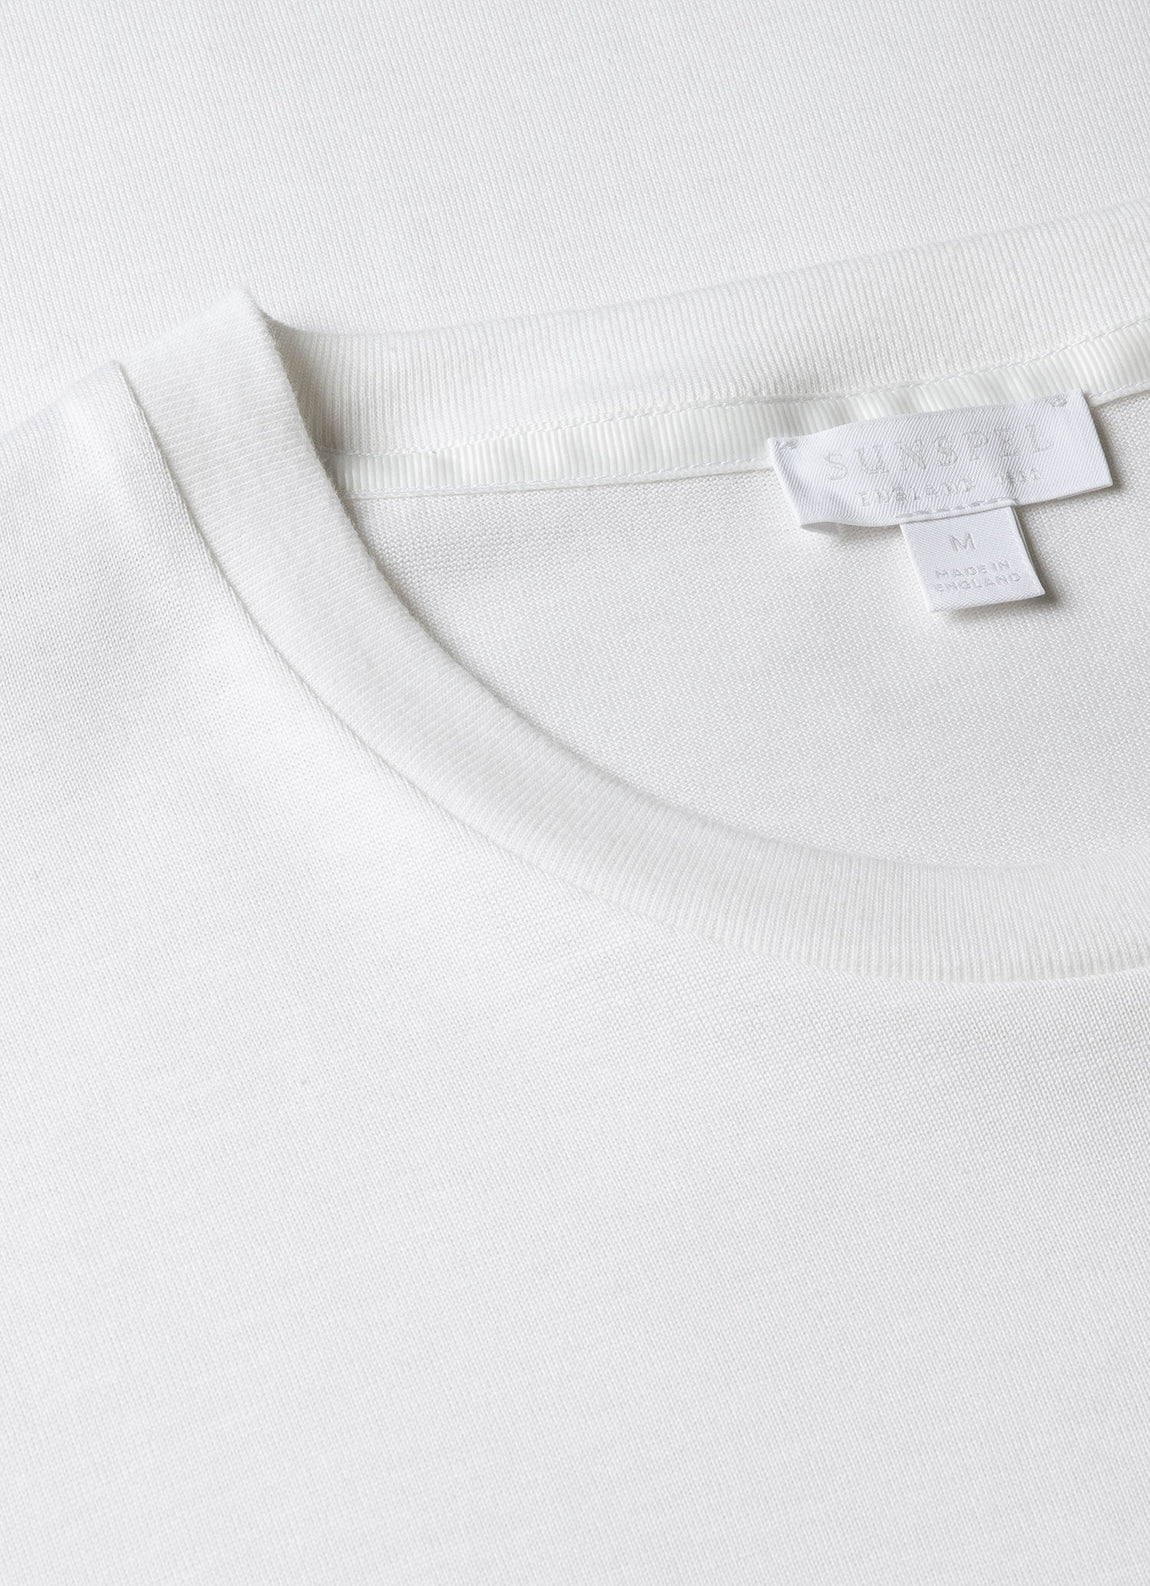 Men's Silk Cotton T-shirt in White